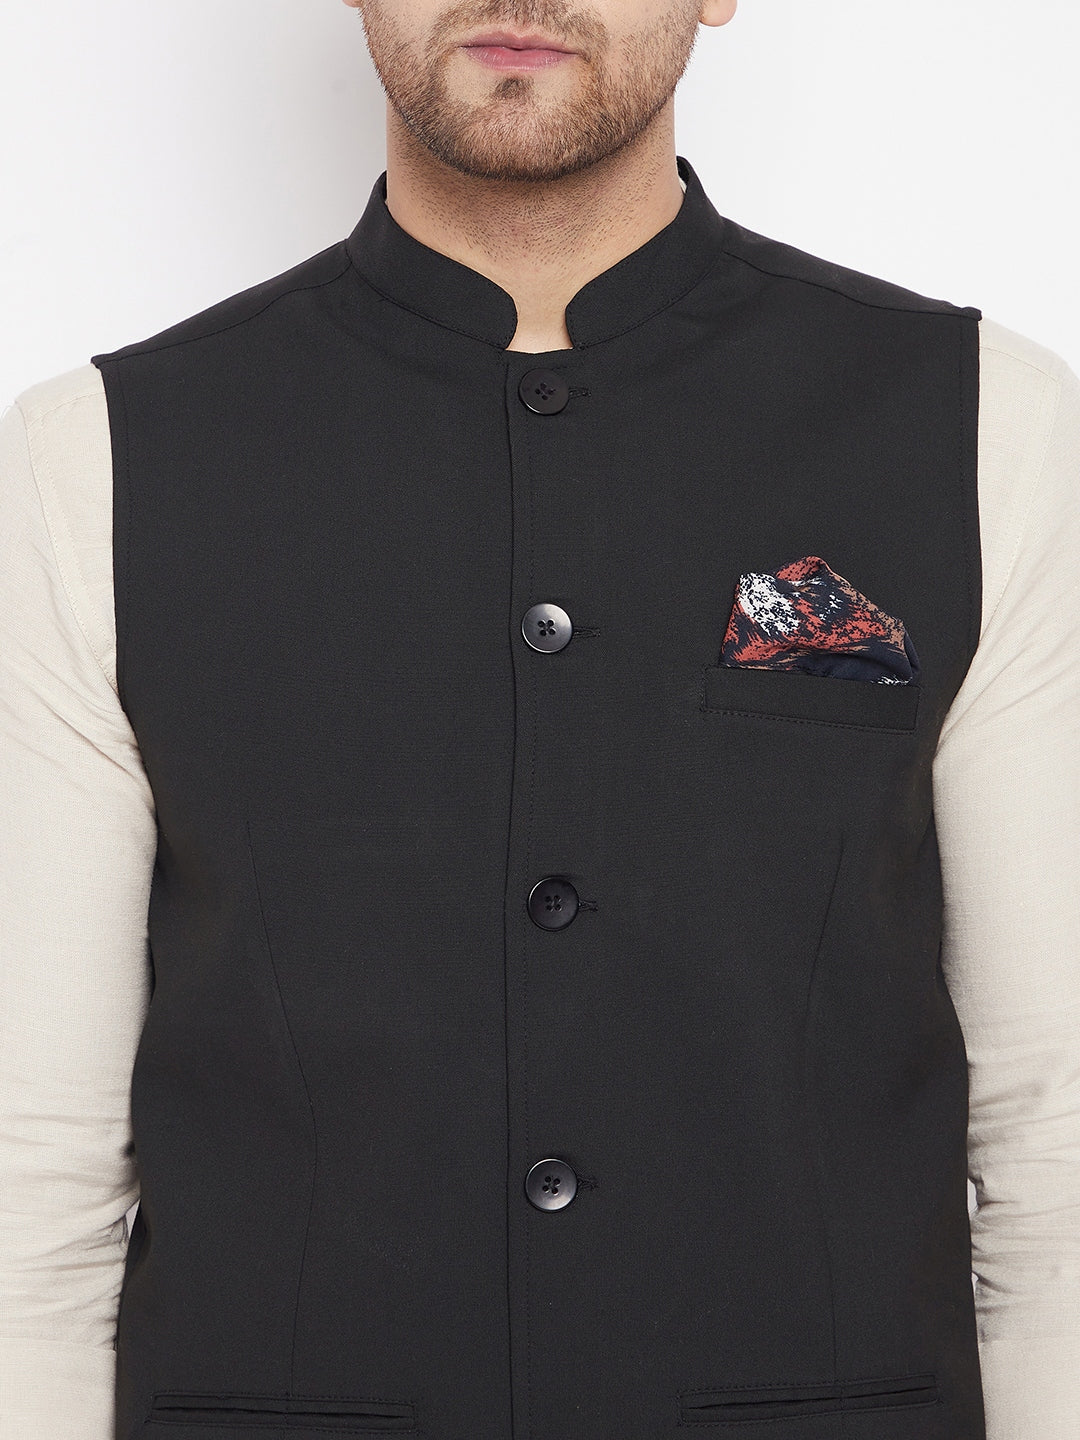 Men's Black Color Nehru Jacket-Contrast Lining-Inbuilt Pocket Square - Even Apparels